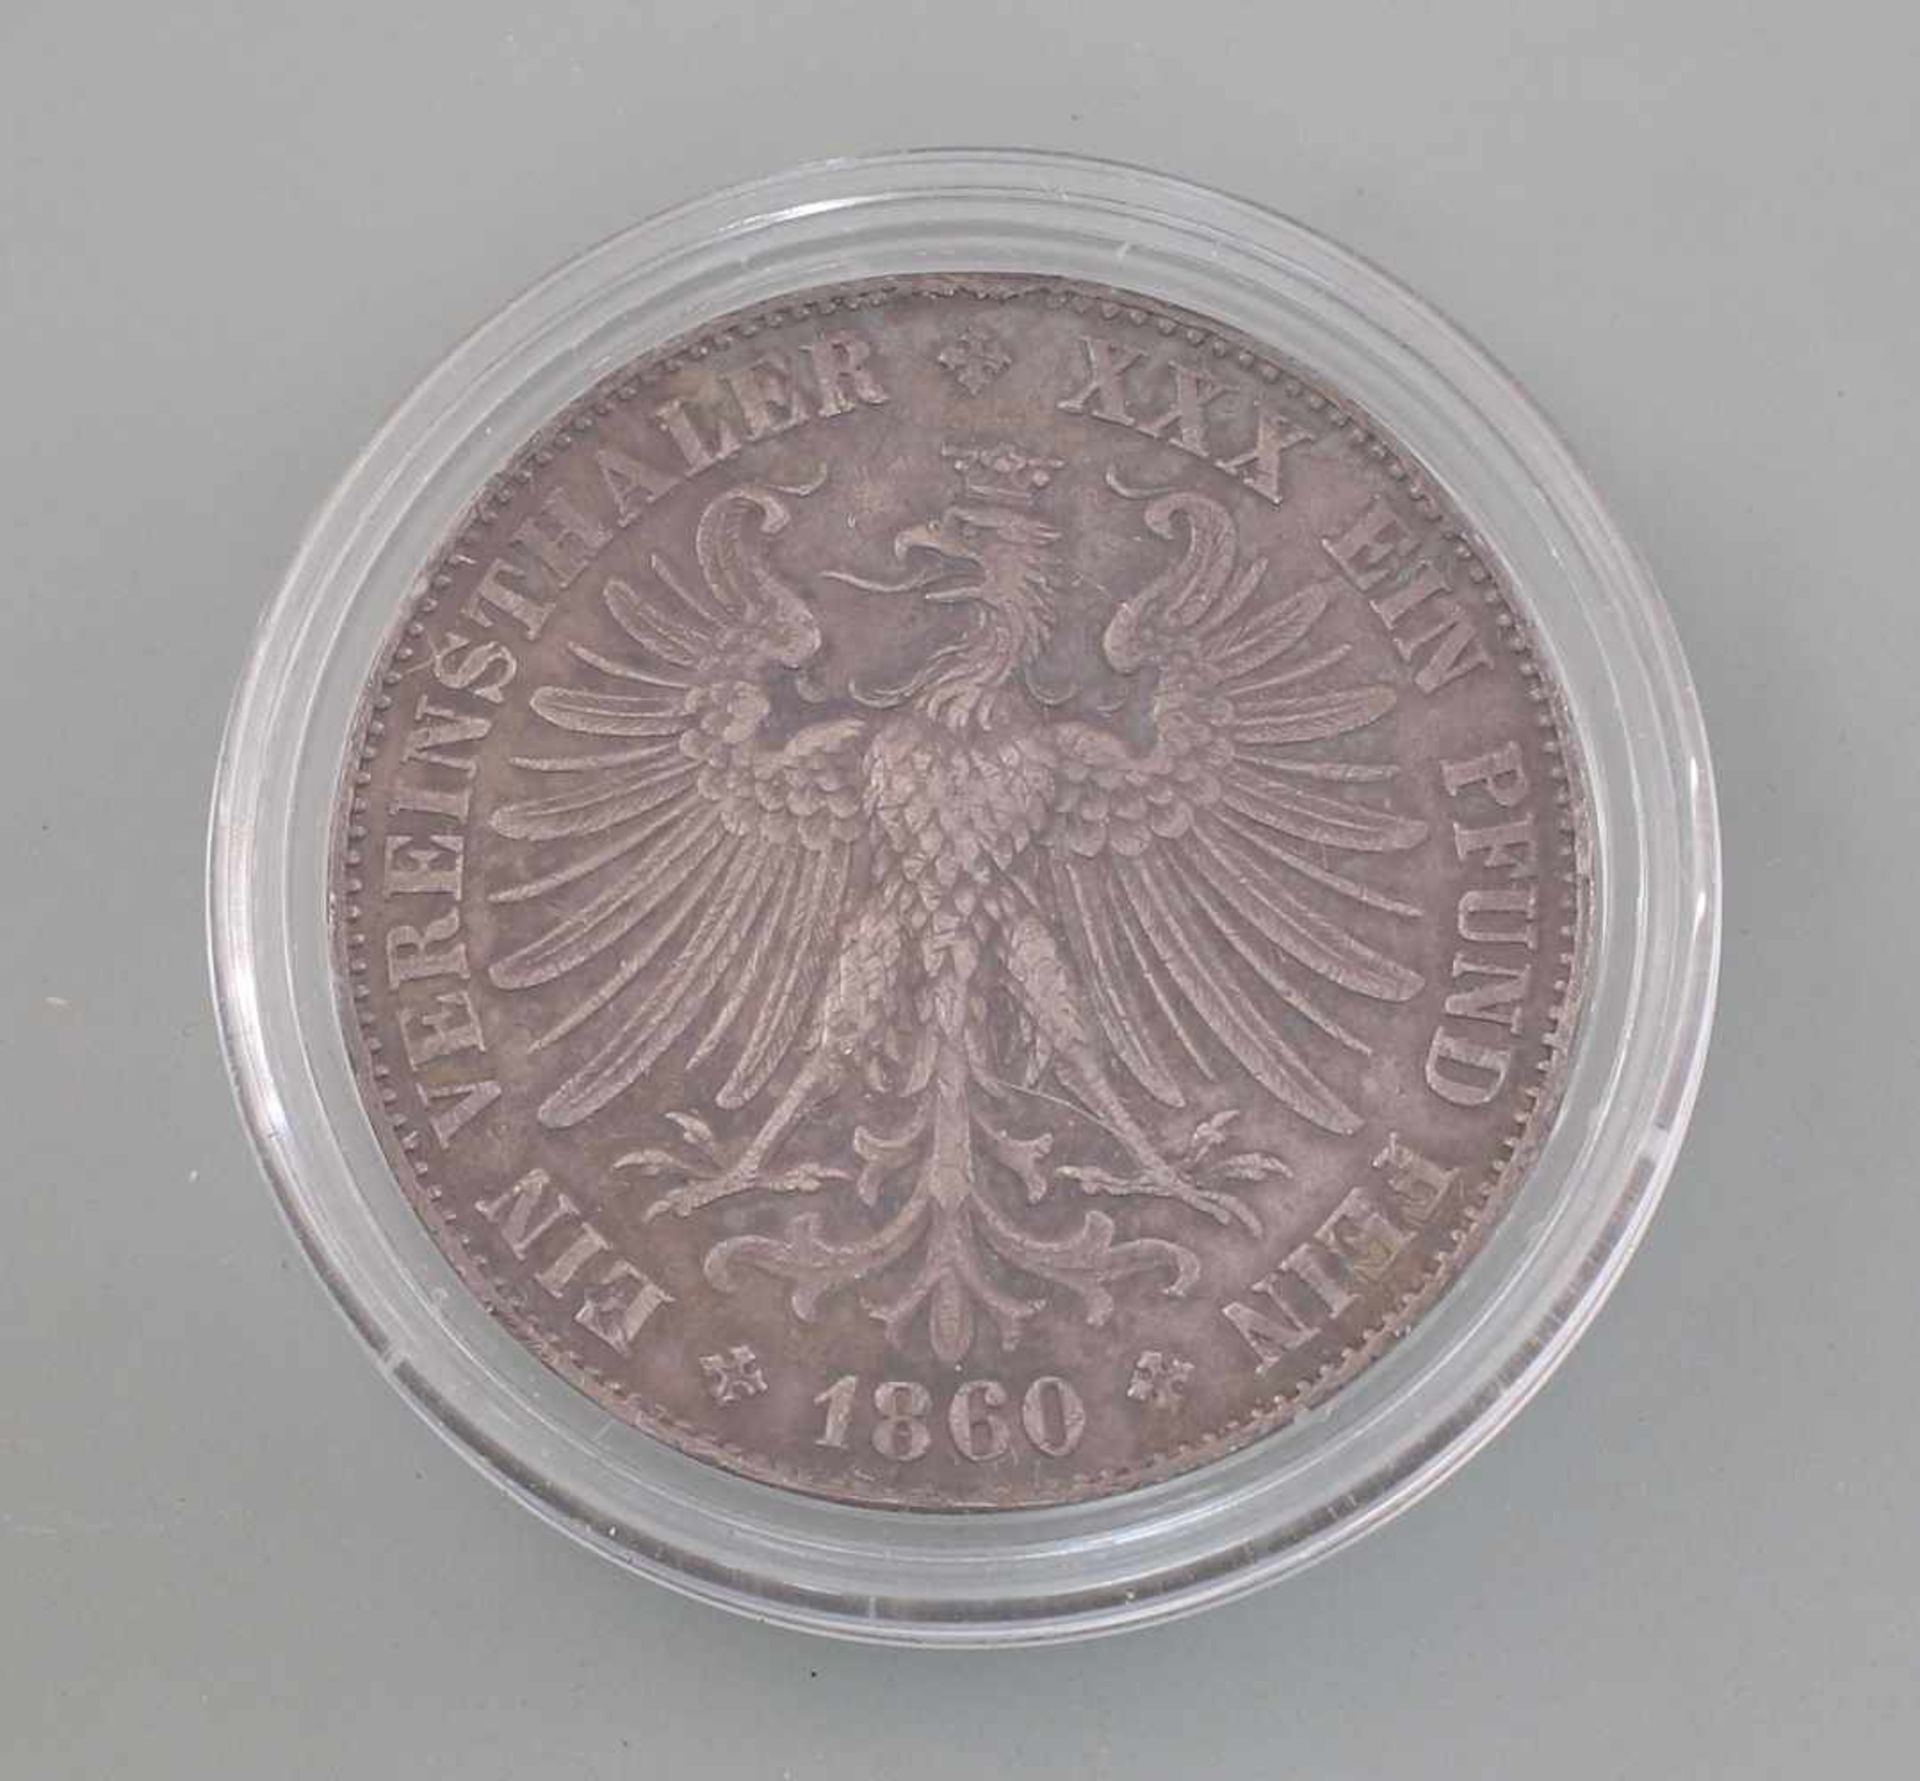 Silber-Münze Vereinsthaler Freie Stadt Frankfurt 1860900er Silber, 18,42 g, D 33 mm, Ein - Bild 2 aus 2